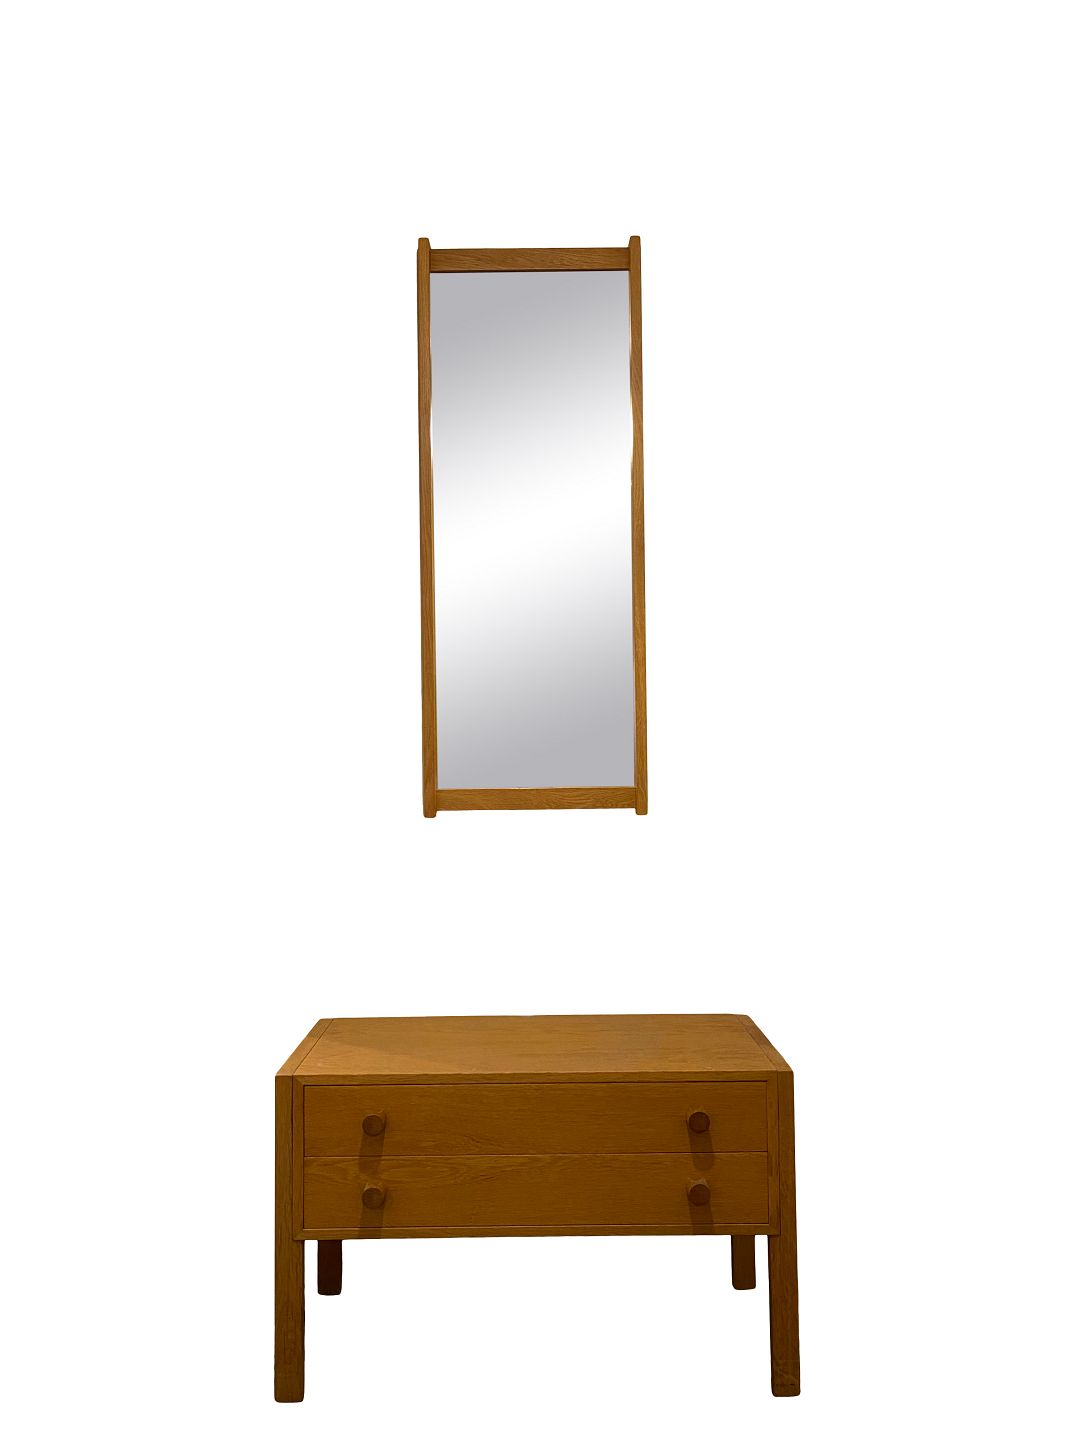 Entre sæt i form af spejl og lav kommode i lys eg af design fra 1960erne. - Osted Antik & Design